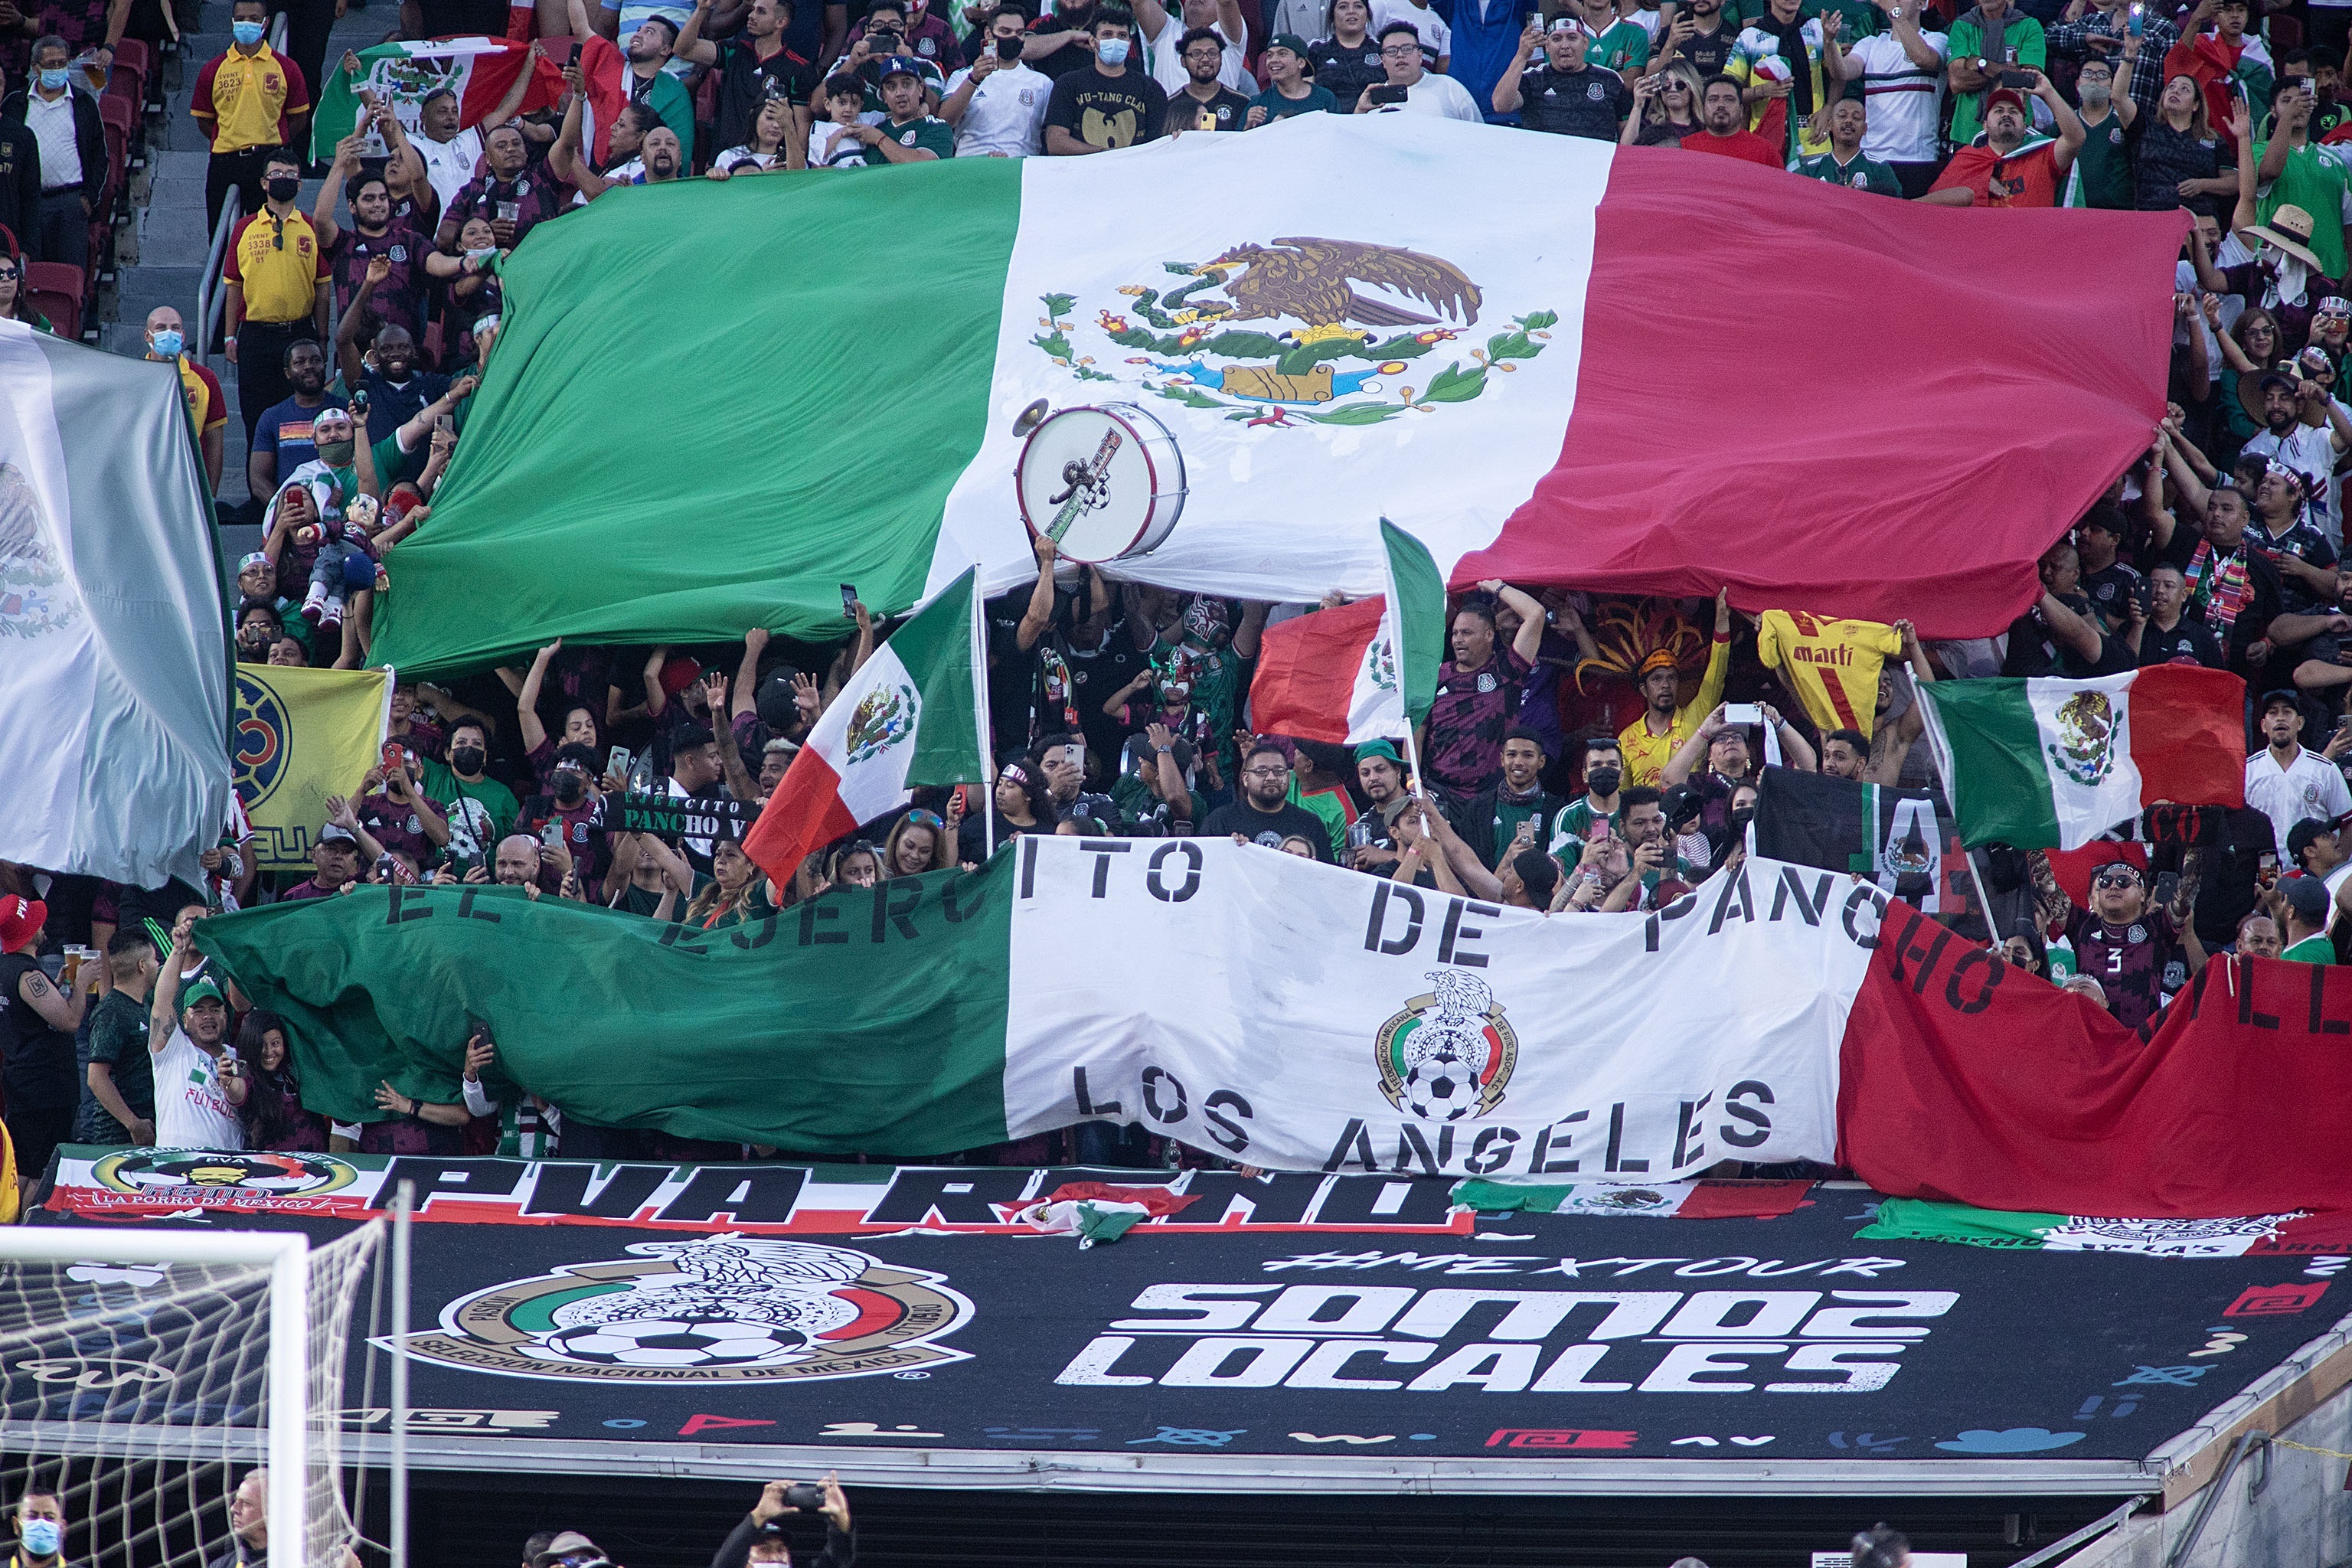 La Fifa le redujo una sanción a la Federación Mexicana de Futbol por el grito homofóbico que usan durante los juegos de la Selección de México. Foto Prensa Libre: EFE.